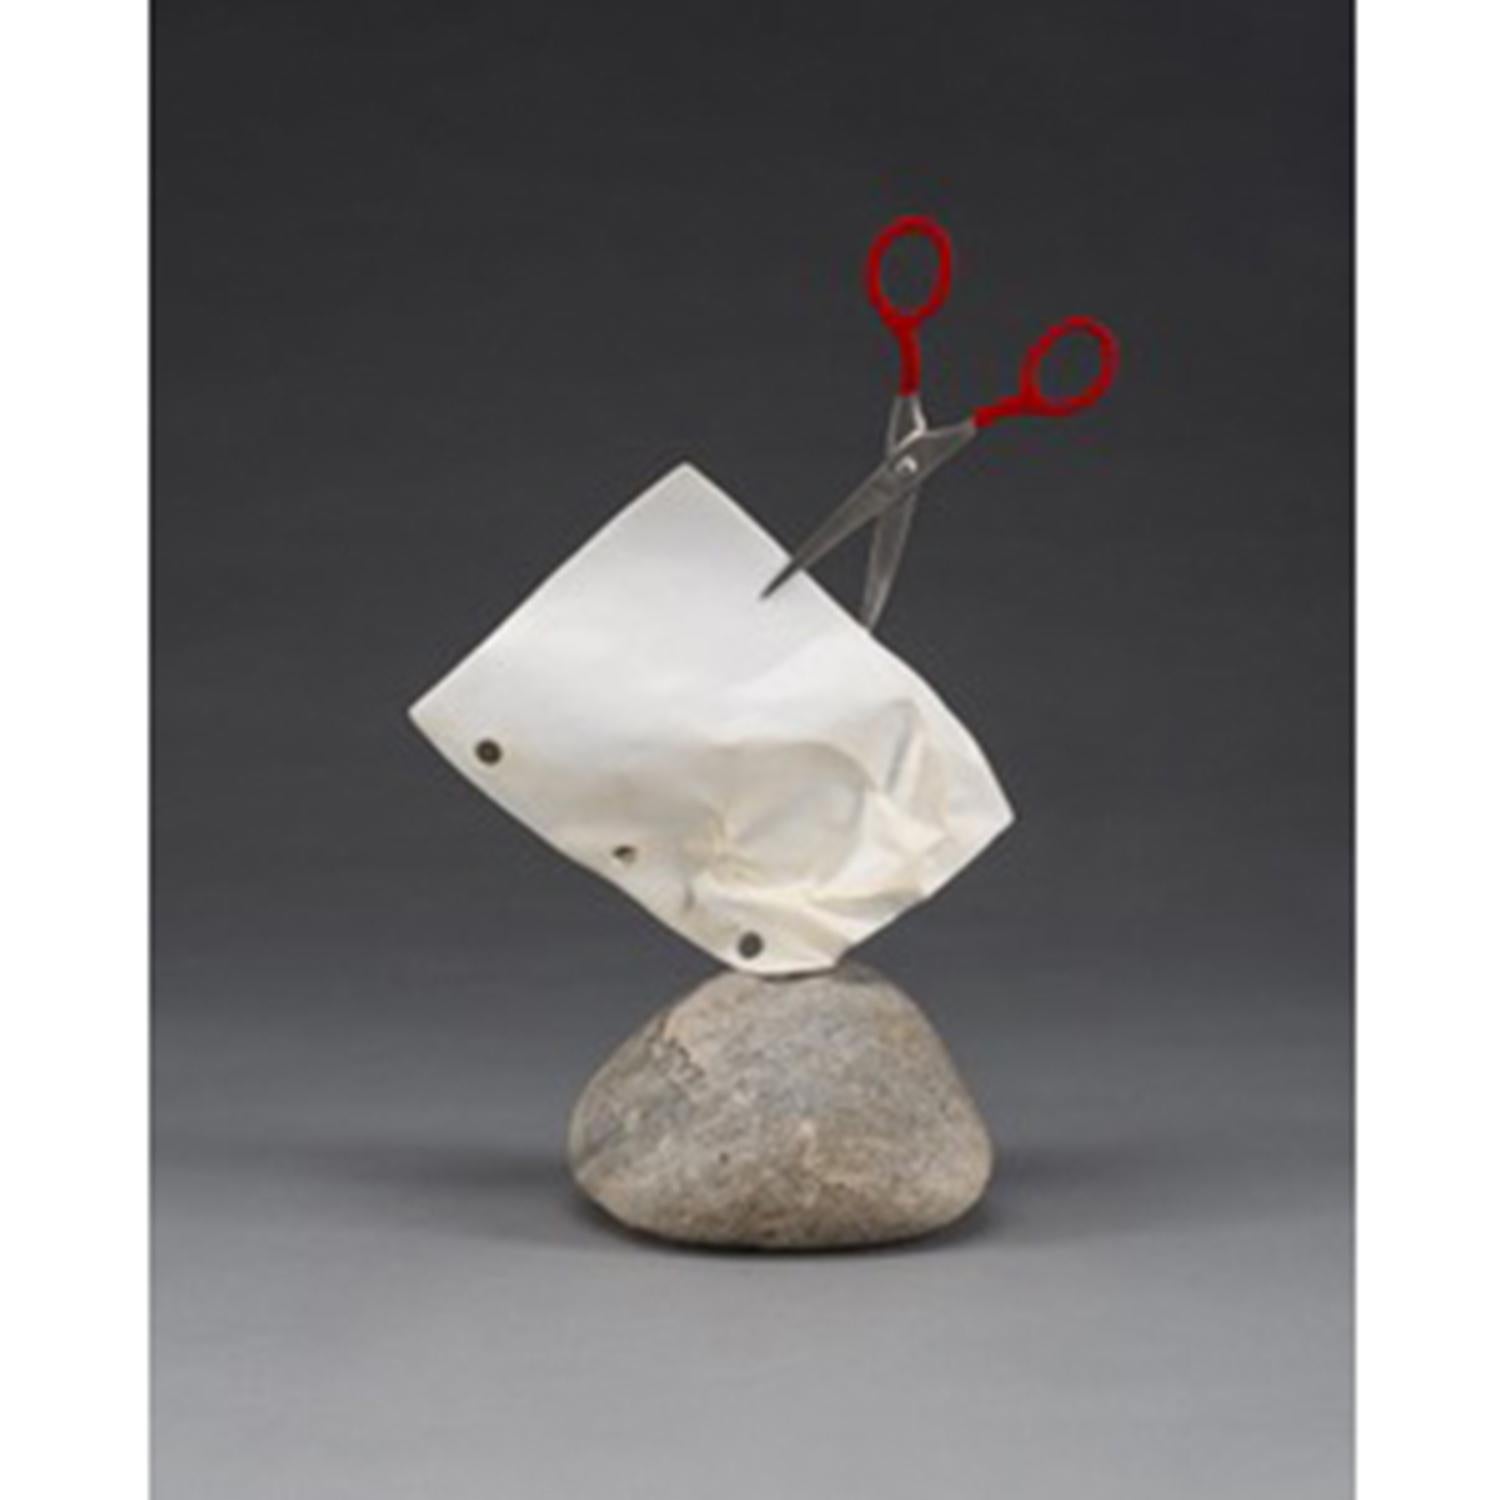 Kevin Box Figurative Sculpture - Stone Paper Scissors (Mini) op/ed 